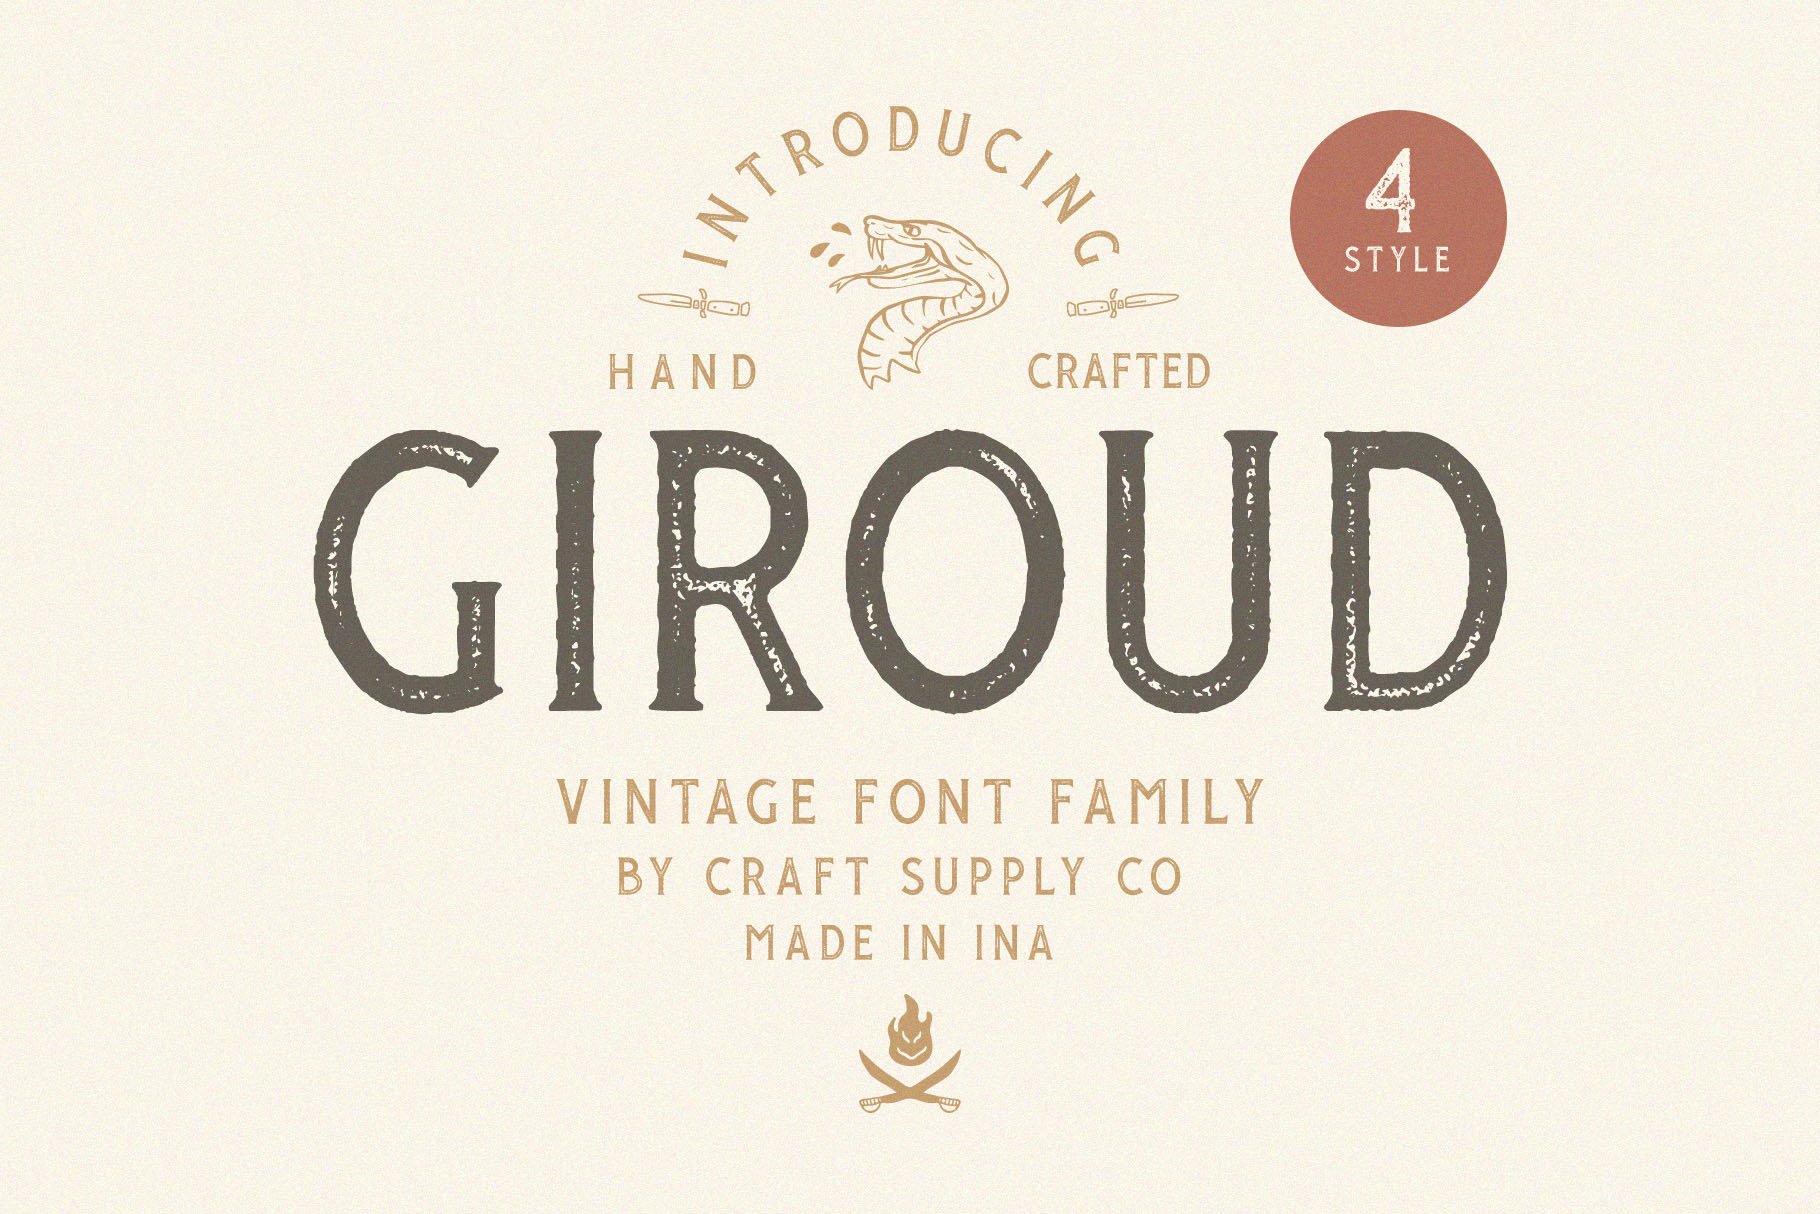 Giroud Vintage Font Family + Bonus cover image.